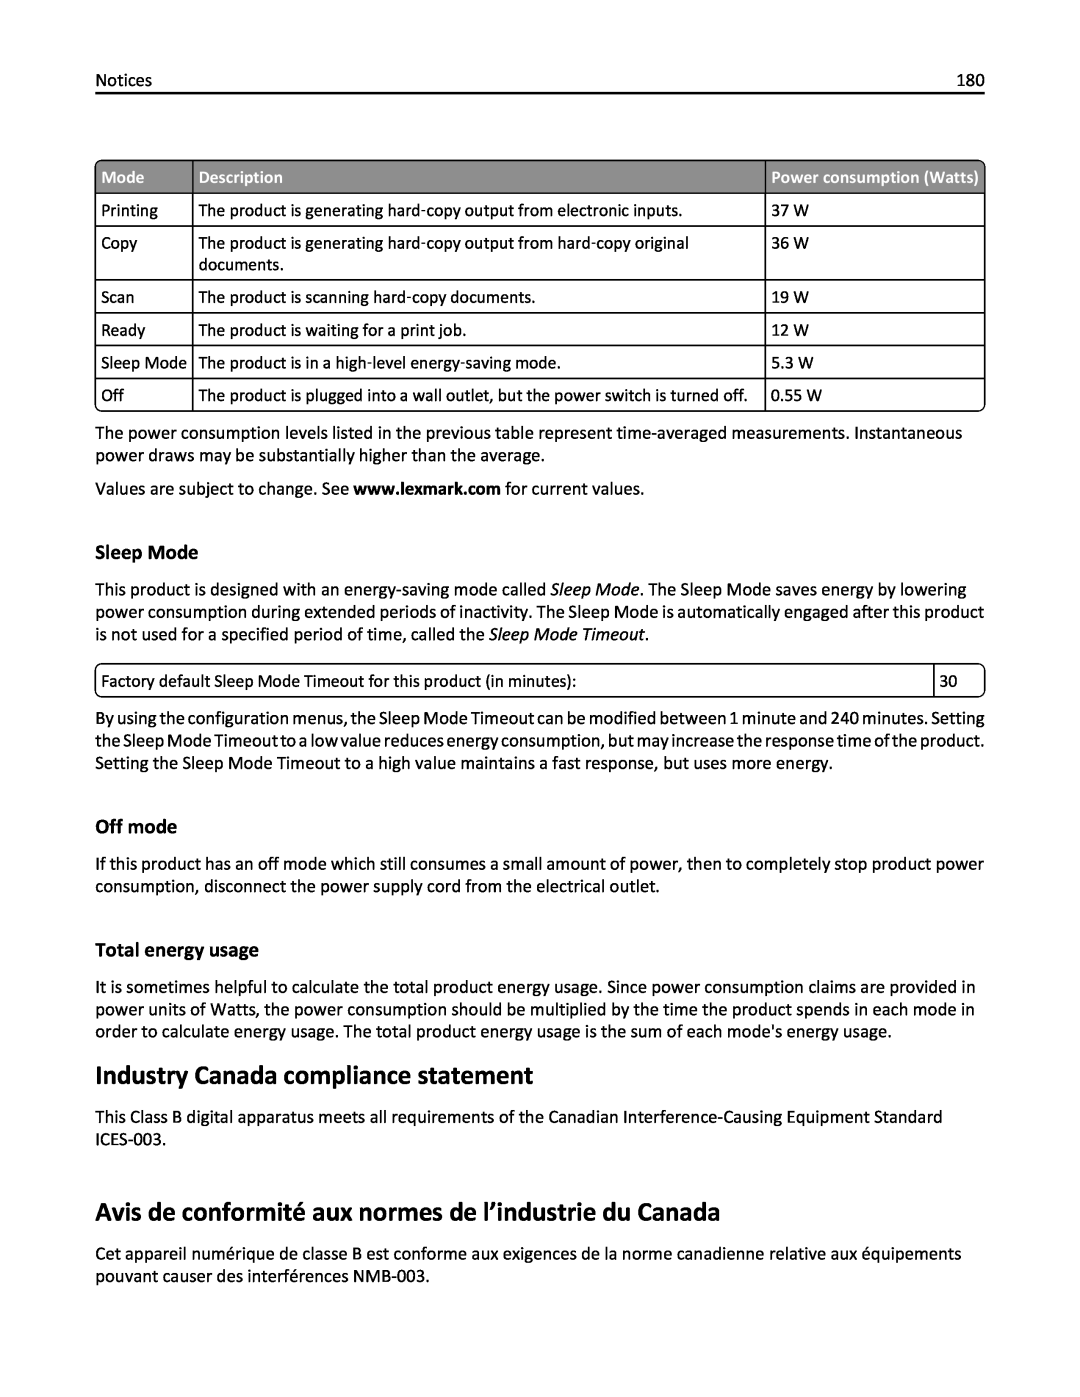 Lexmark PRO4000C Industry Canada compliance statement, Avis de conformité aux normes de l’industrie du Canada, Sleep Mode 